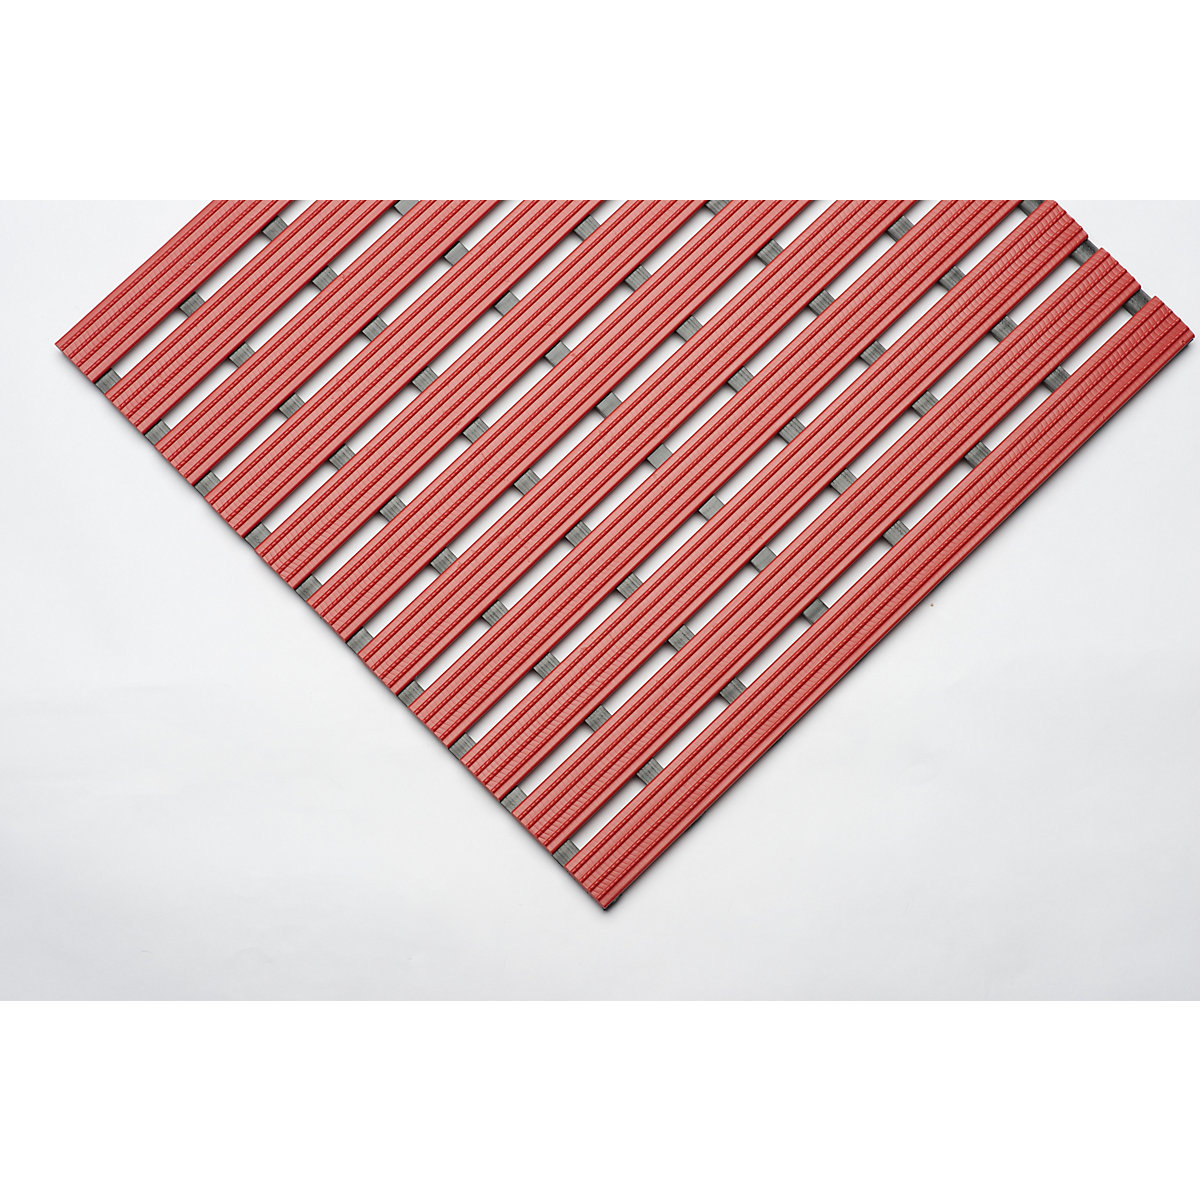 PVC-profilú szőnyeg, folyóméterenként, csúszásmentes futófelület kemény PVC-ből, szélesség 600 mm, piros-6